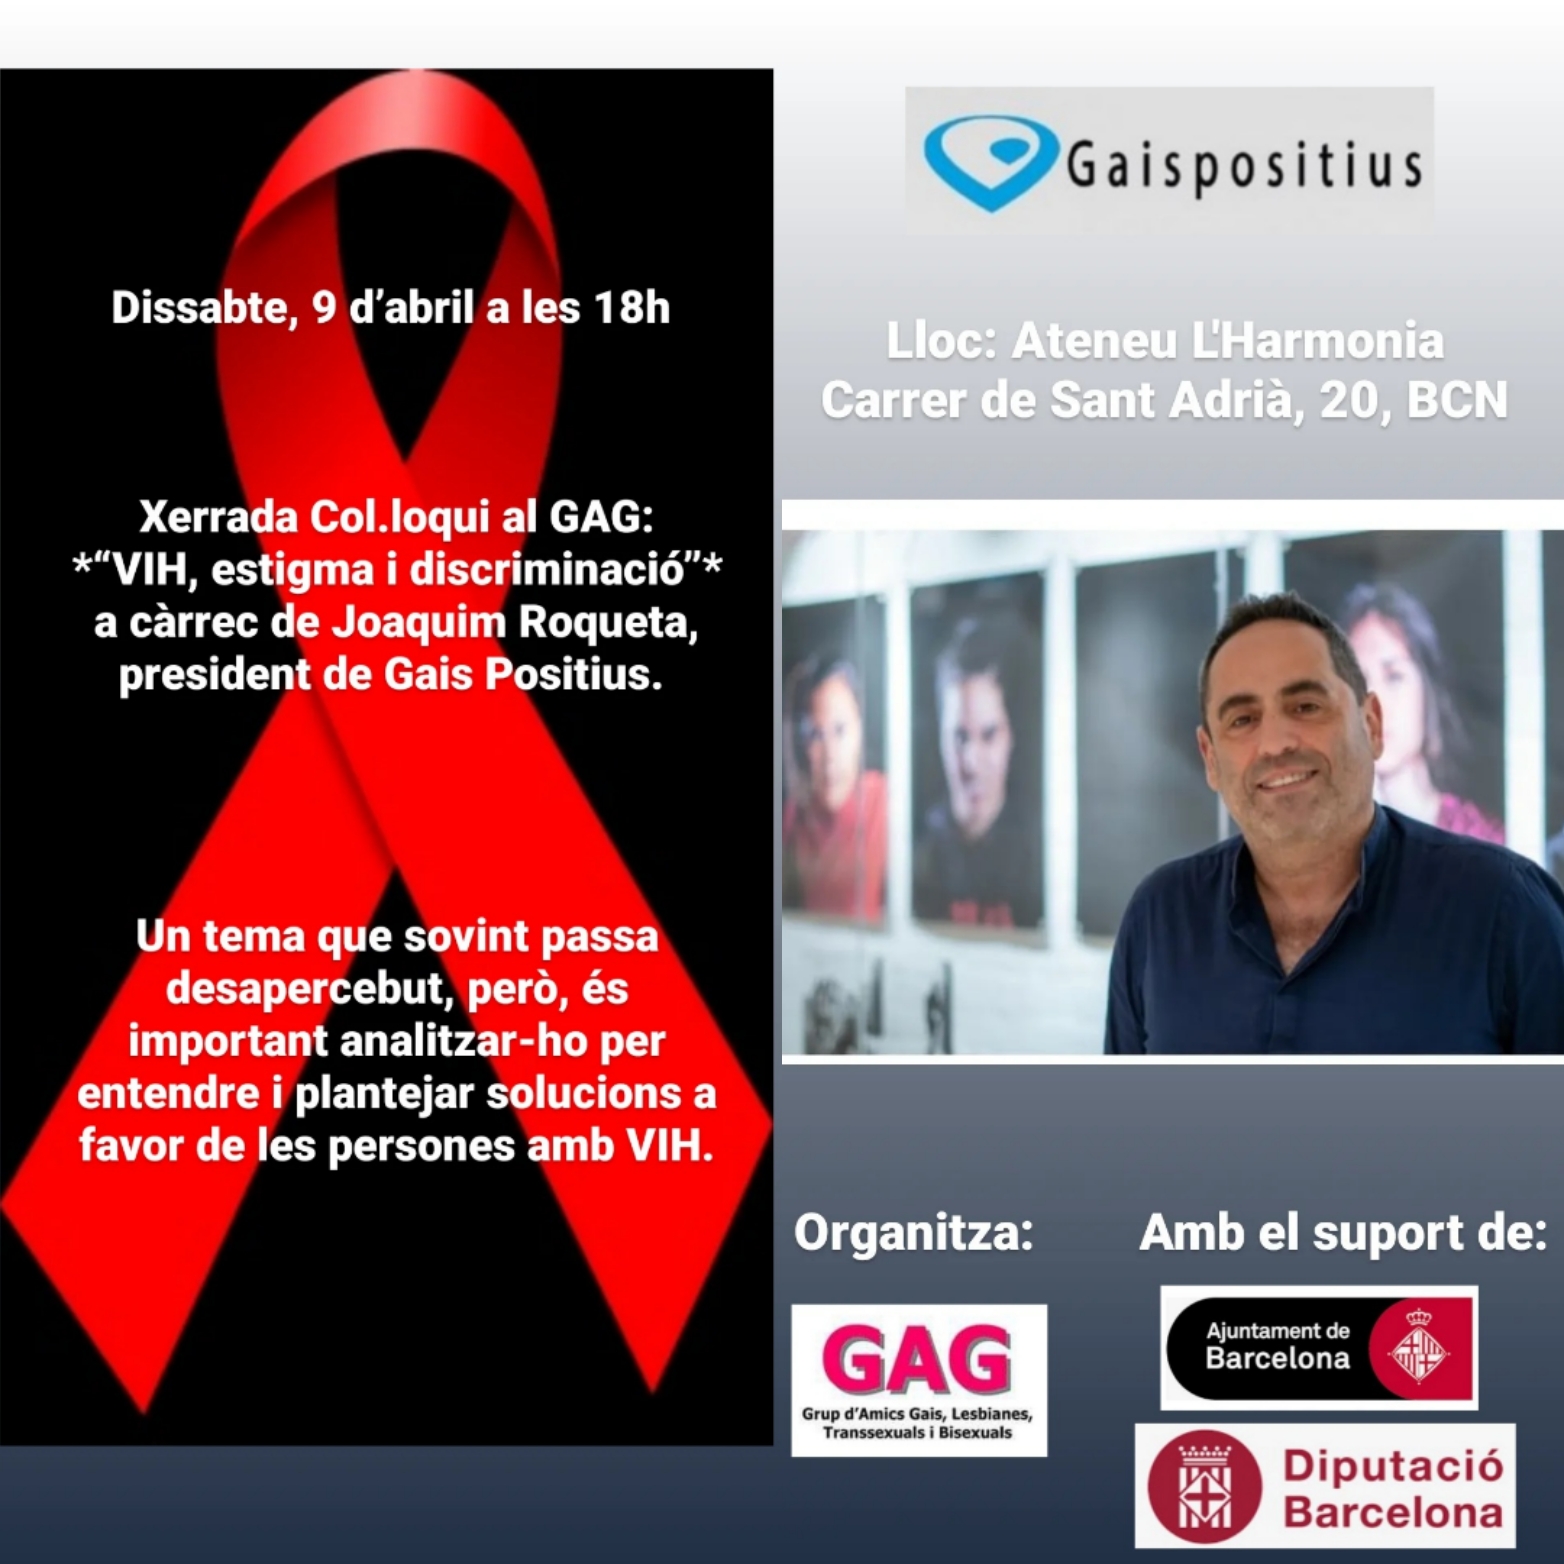 Dissabte, 9 d’abril a les 18h: Xerrada “VIH, estigma i discriminació”